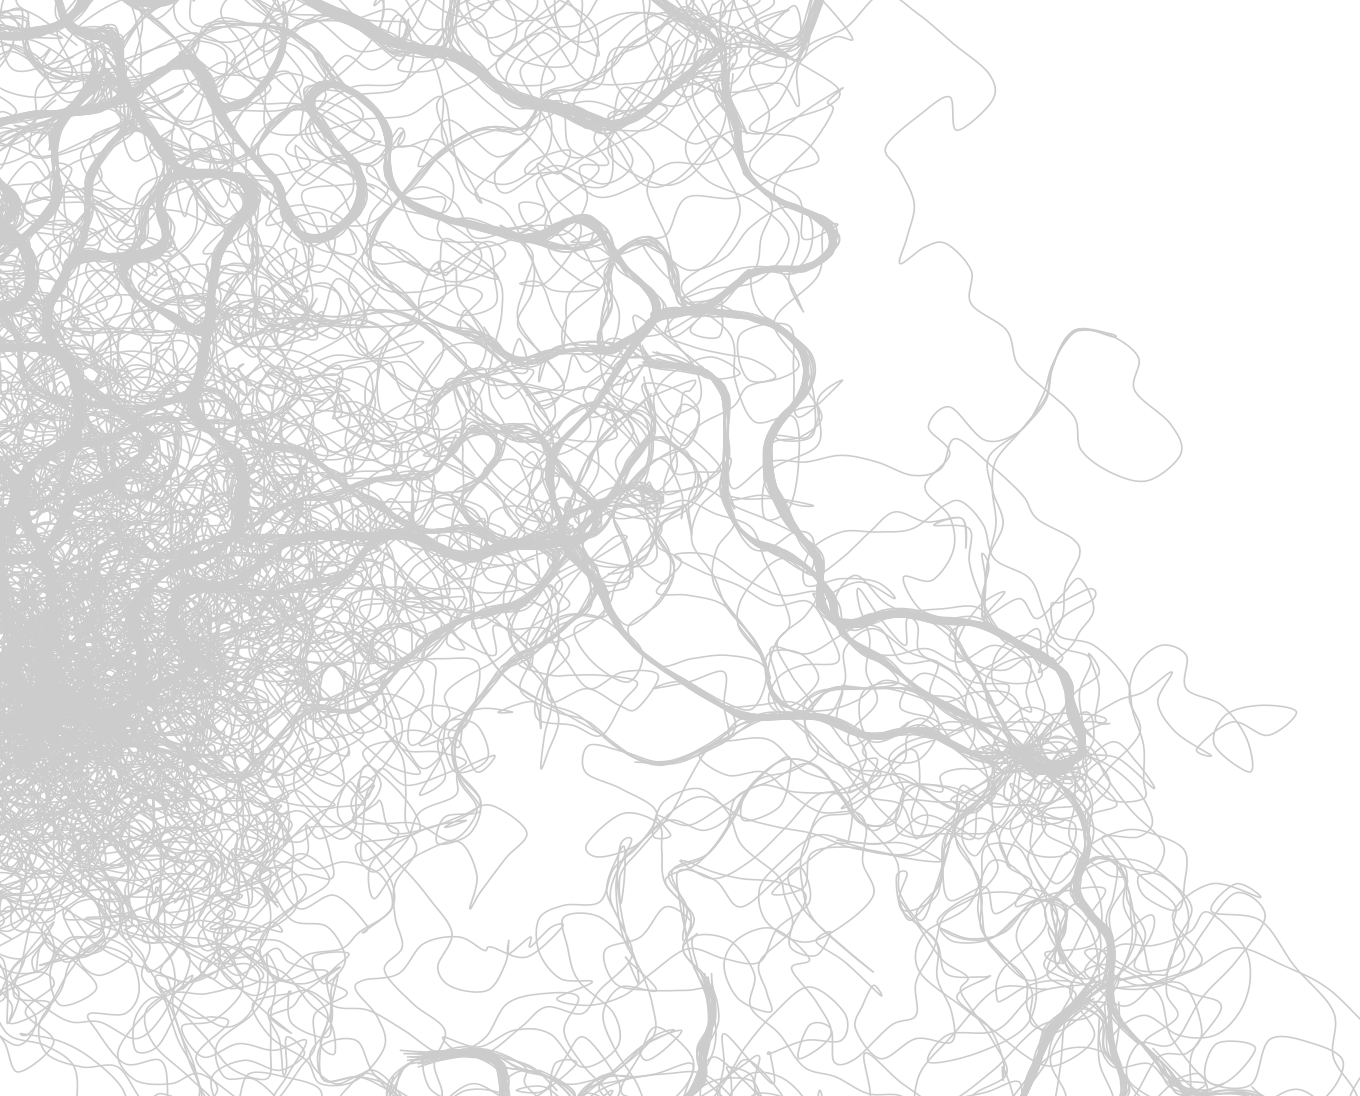 Рисуем муравьями: процедурные изображения при помощи алгоритмов оптимизации муравьиной колонии - 4